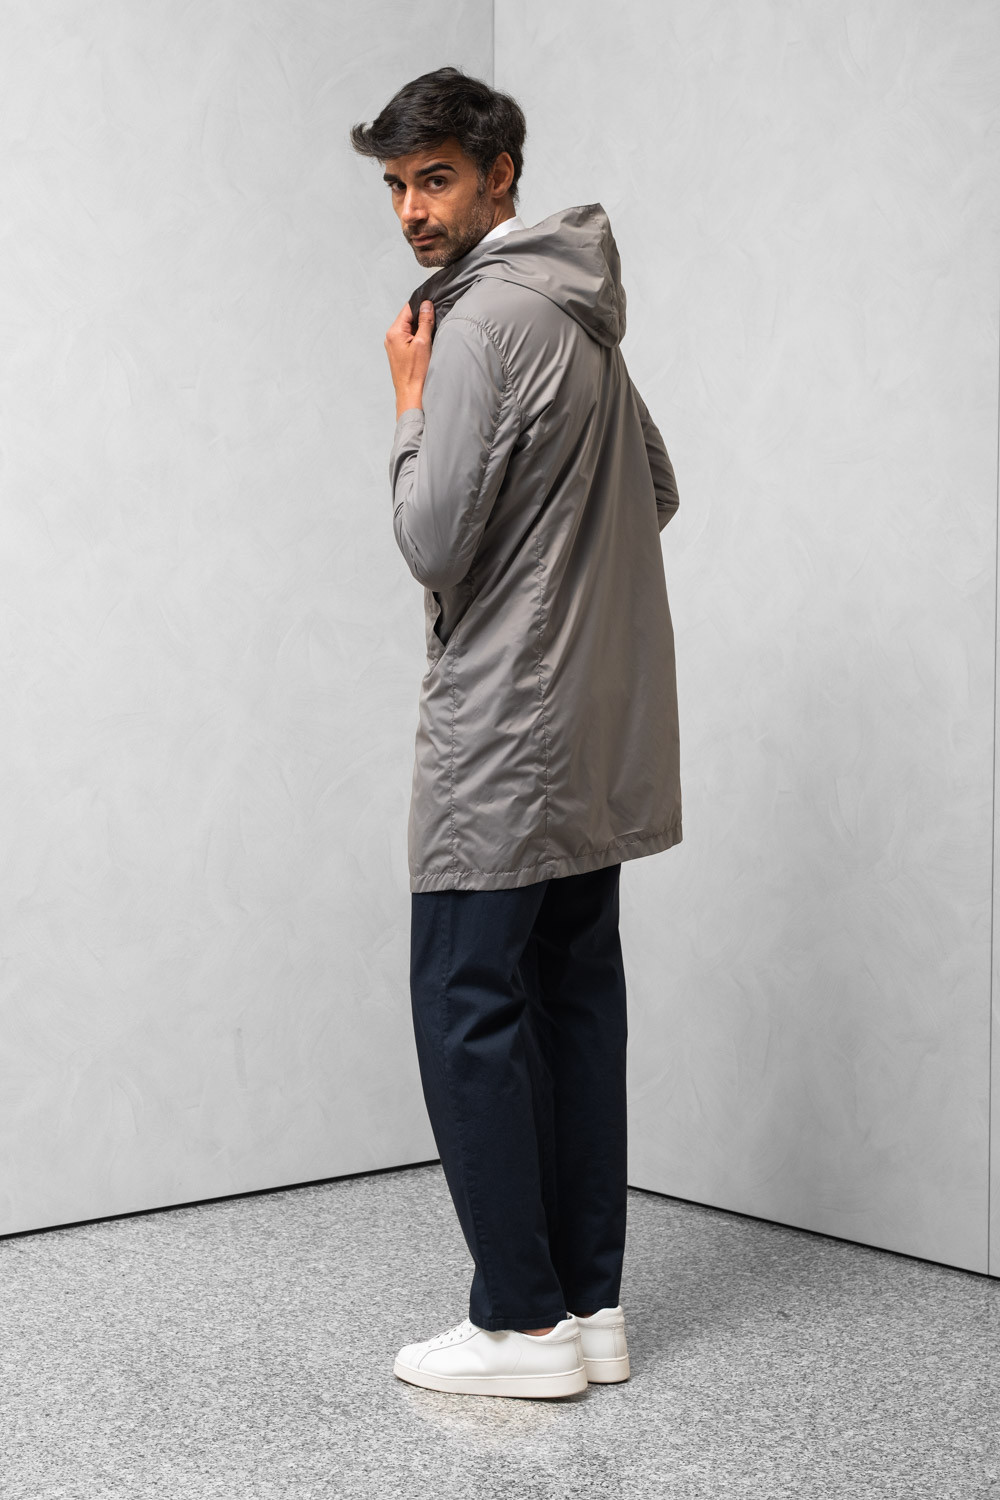 Man water repellent coat hood coat pocket nuts 0909 PARDO-164